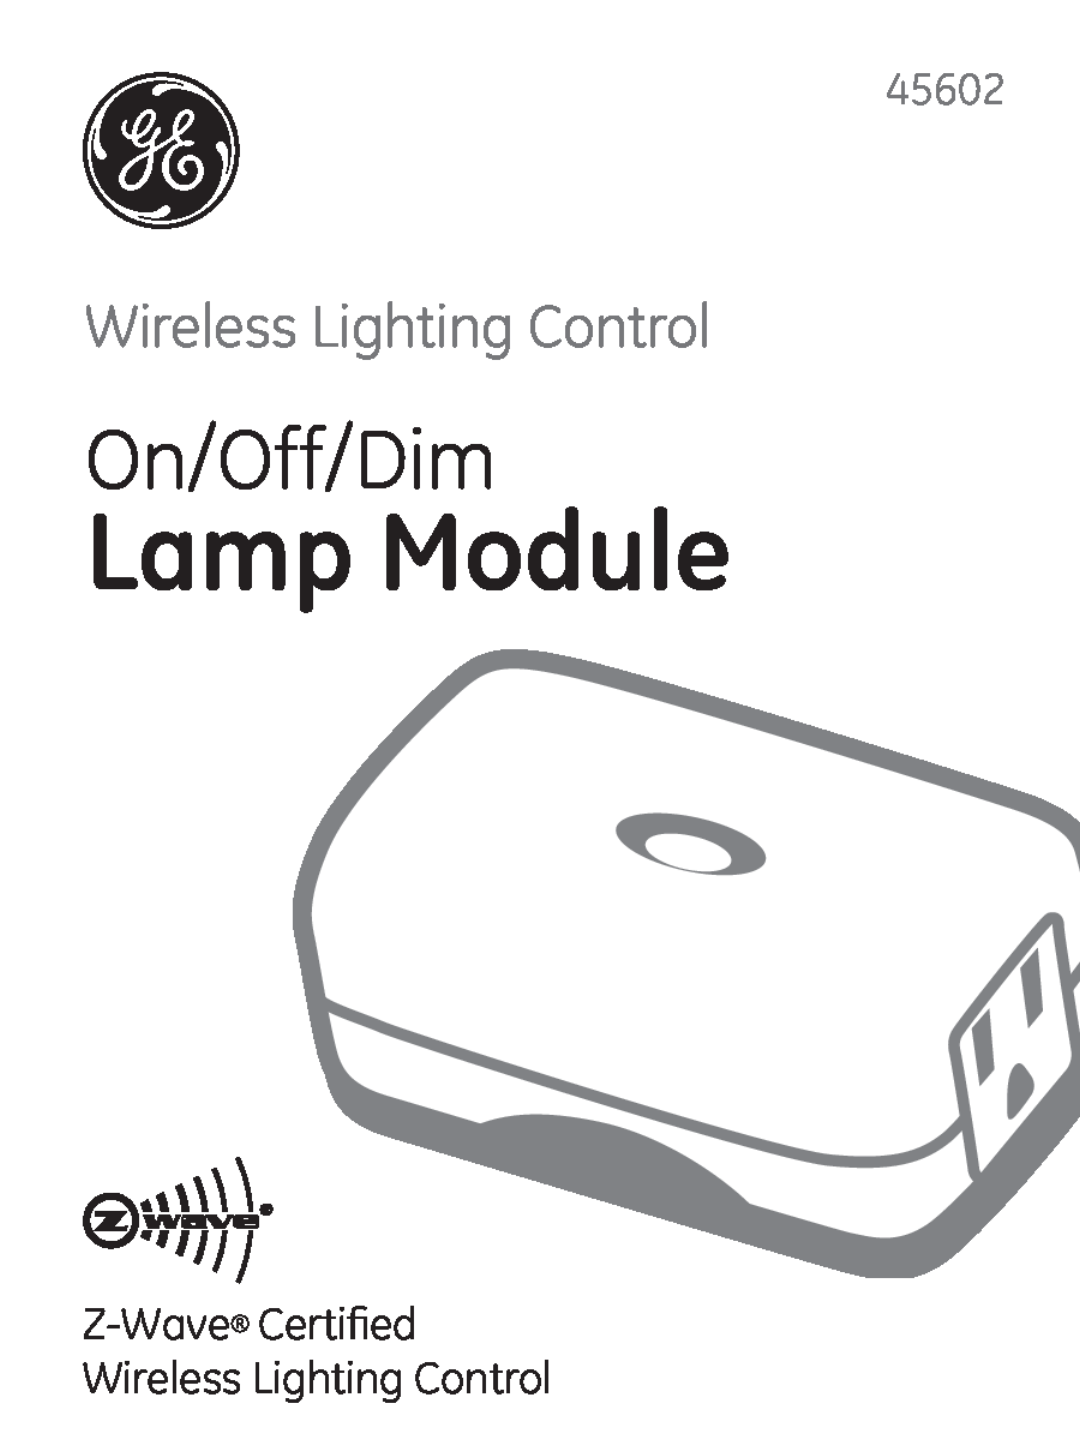 GE 45602 manual Lamp Module, On/Off/Dim, Wireless Lighting Control 